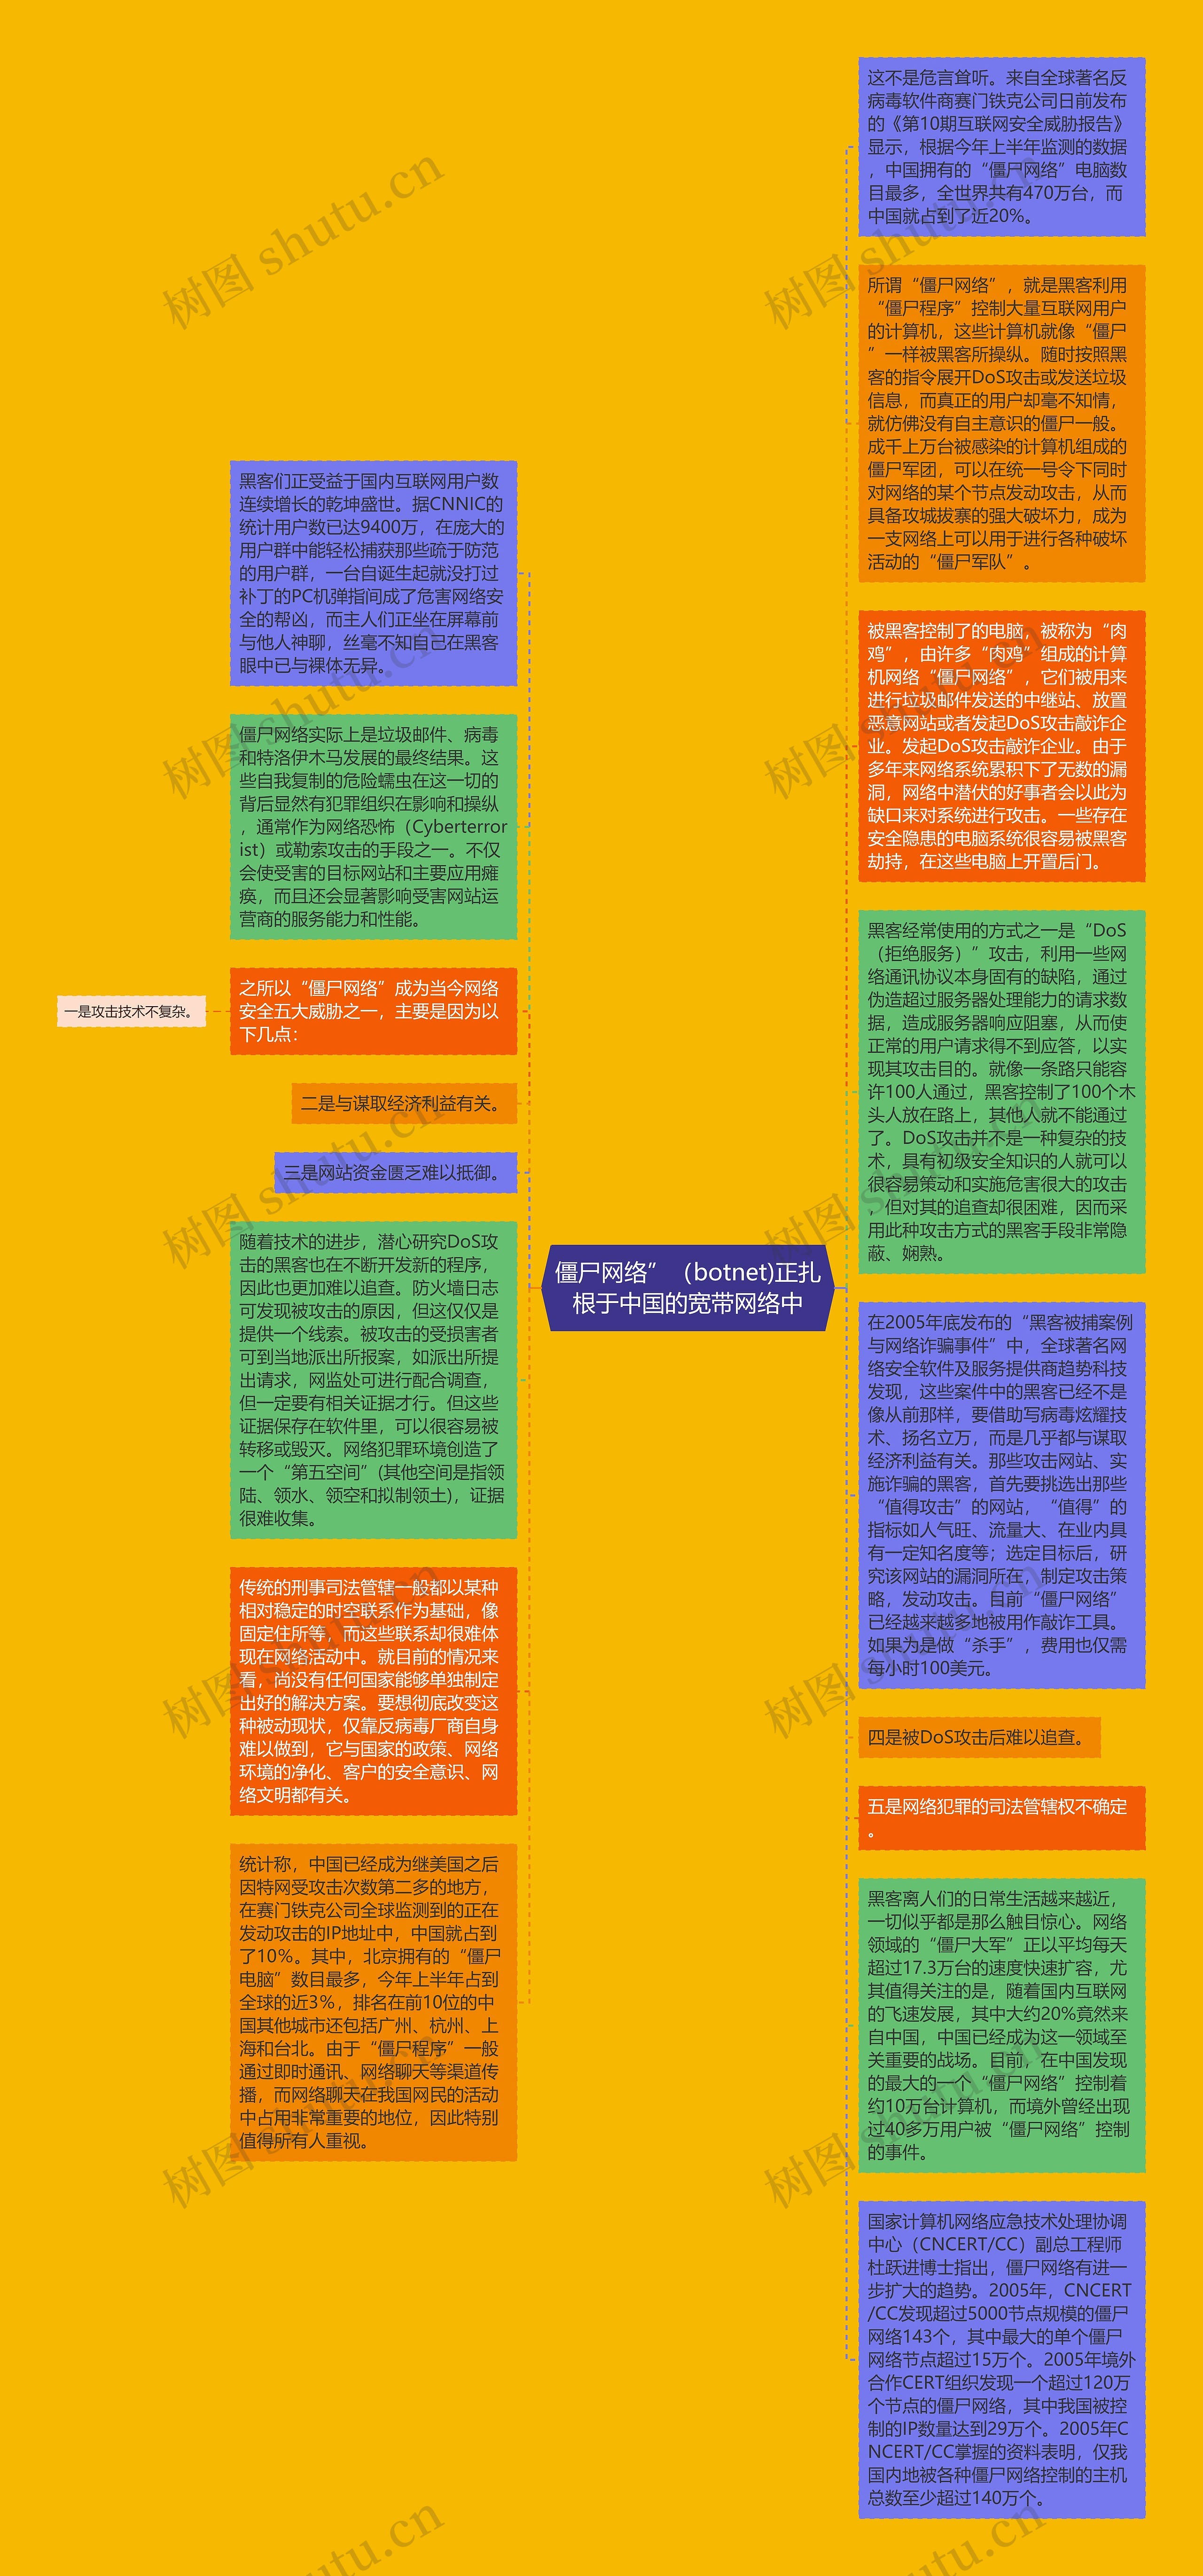 僵尸网络”（botnet)正扎根于中国的宽带网络中思维导图